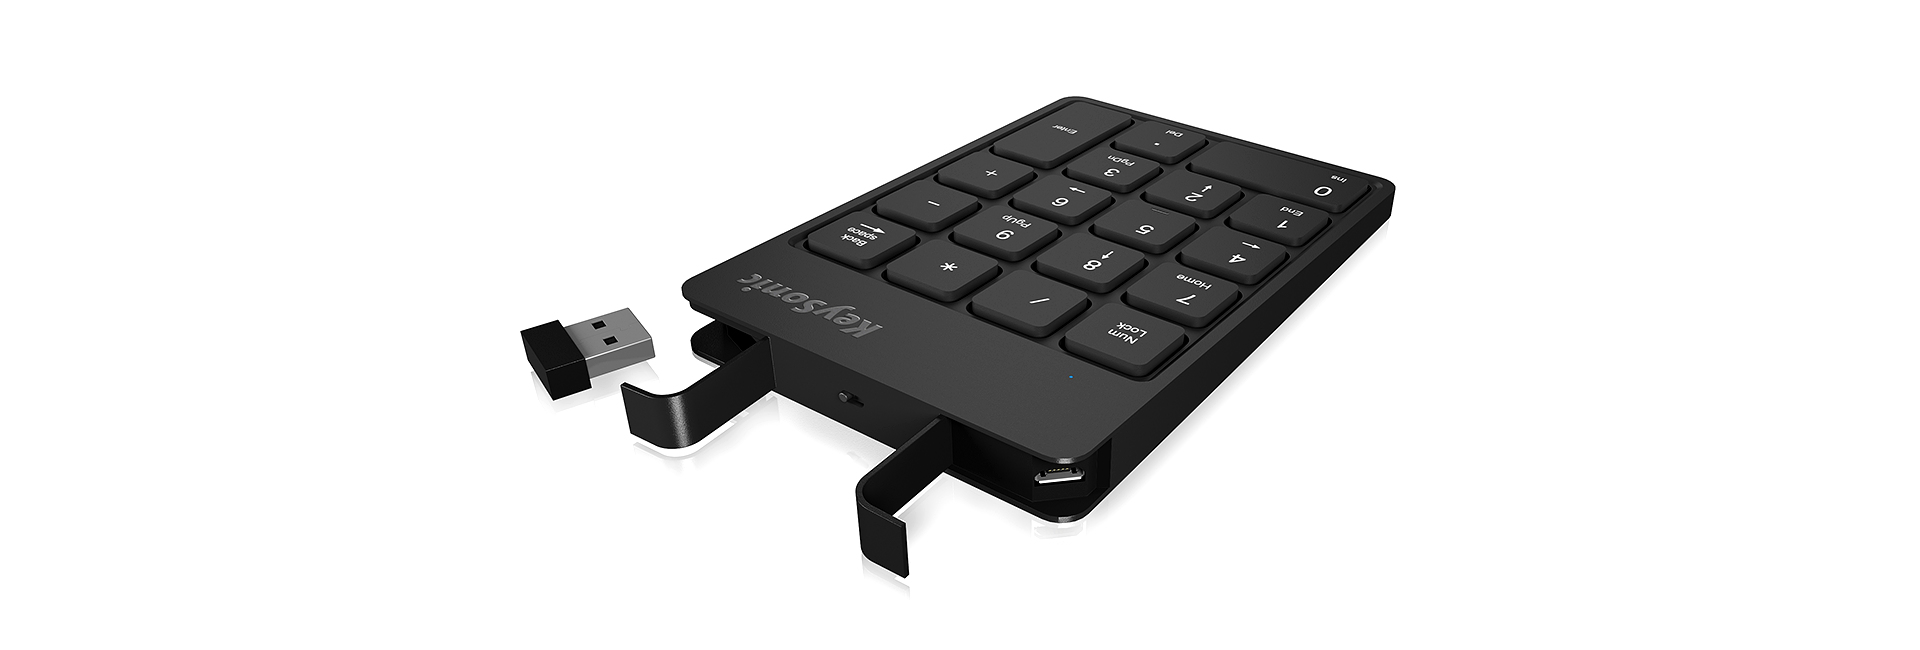 Keysonic KSK-N100RF Kabelloser Nummernblock mit Funkverbindung schwarz wiederaufladbarer Akku Deutsches Tastatur-Layout 